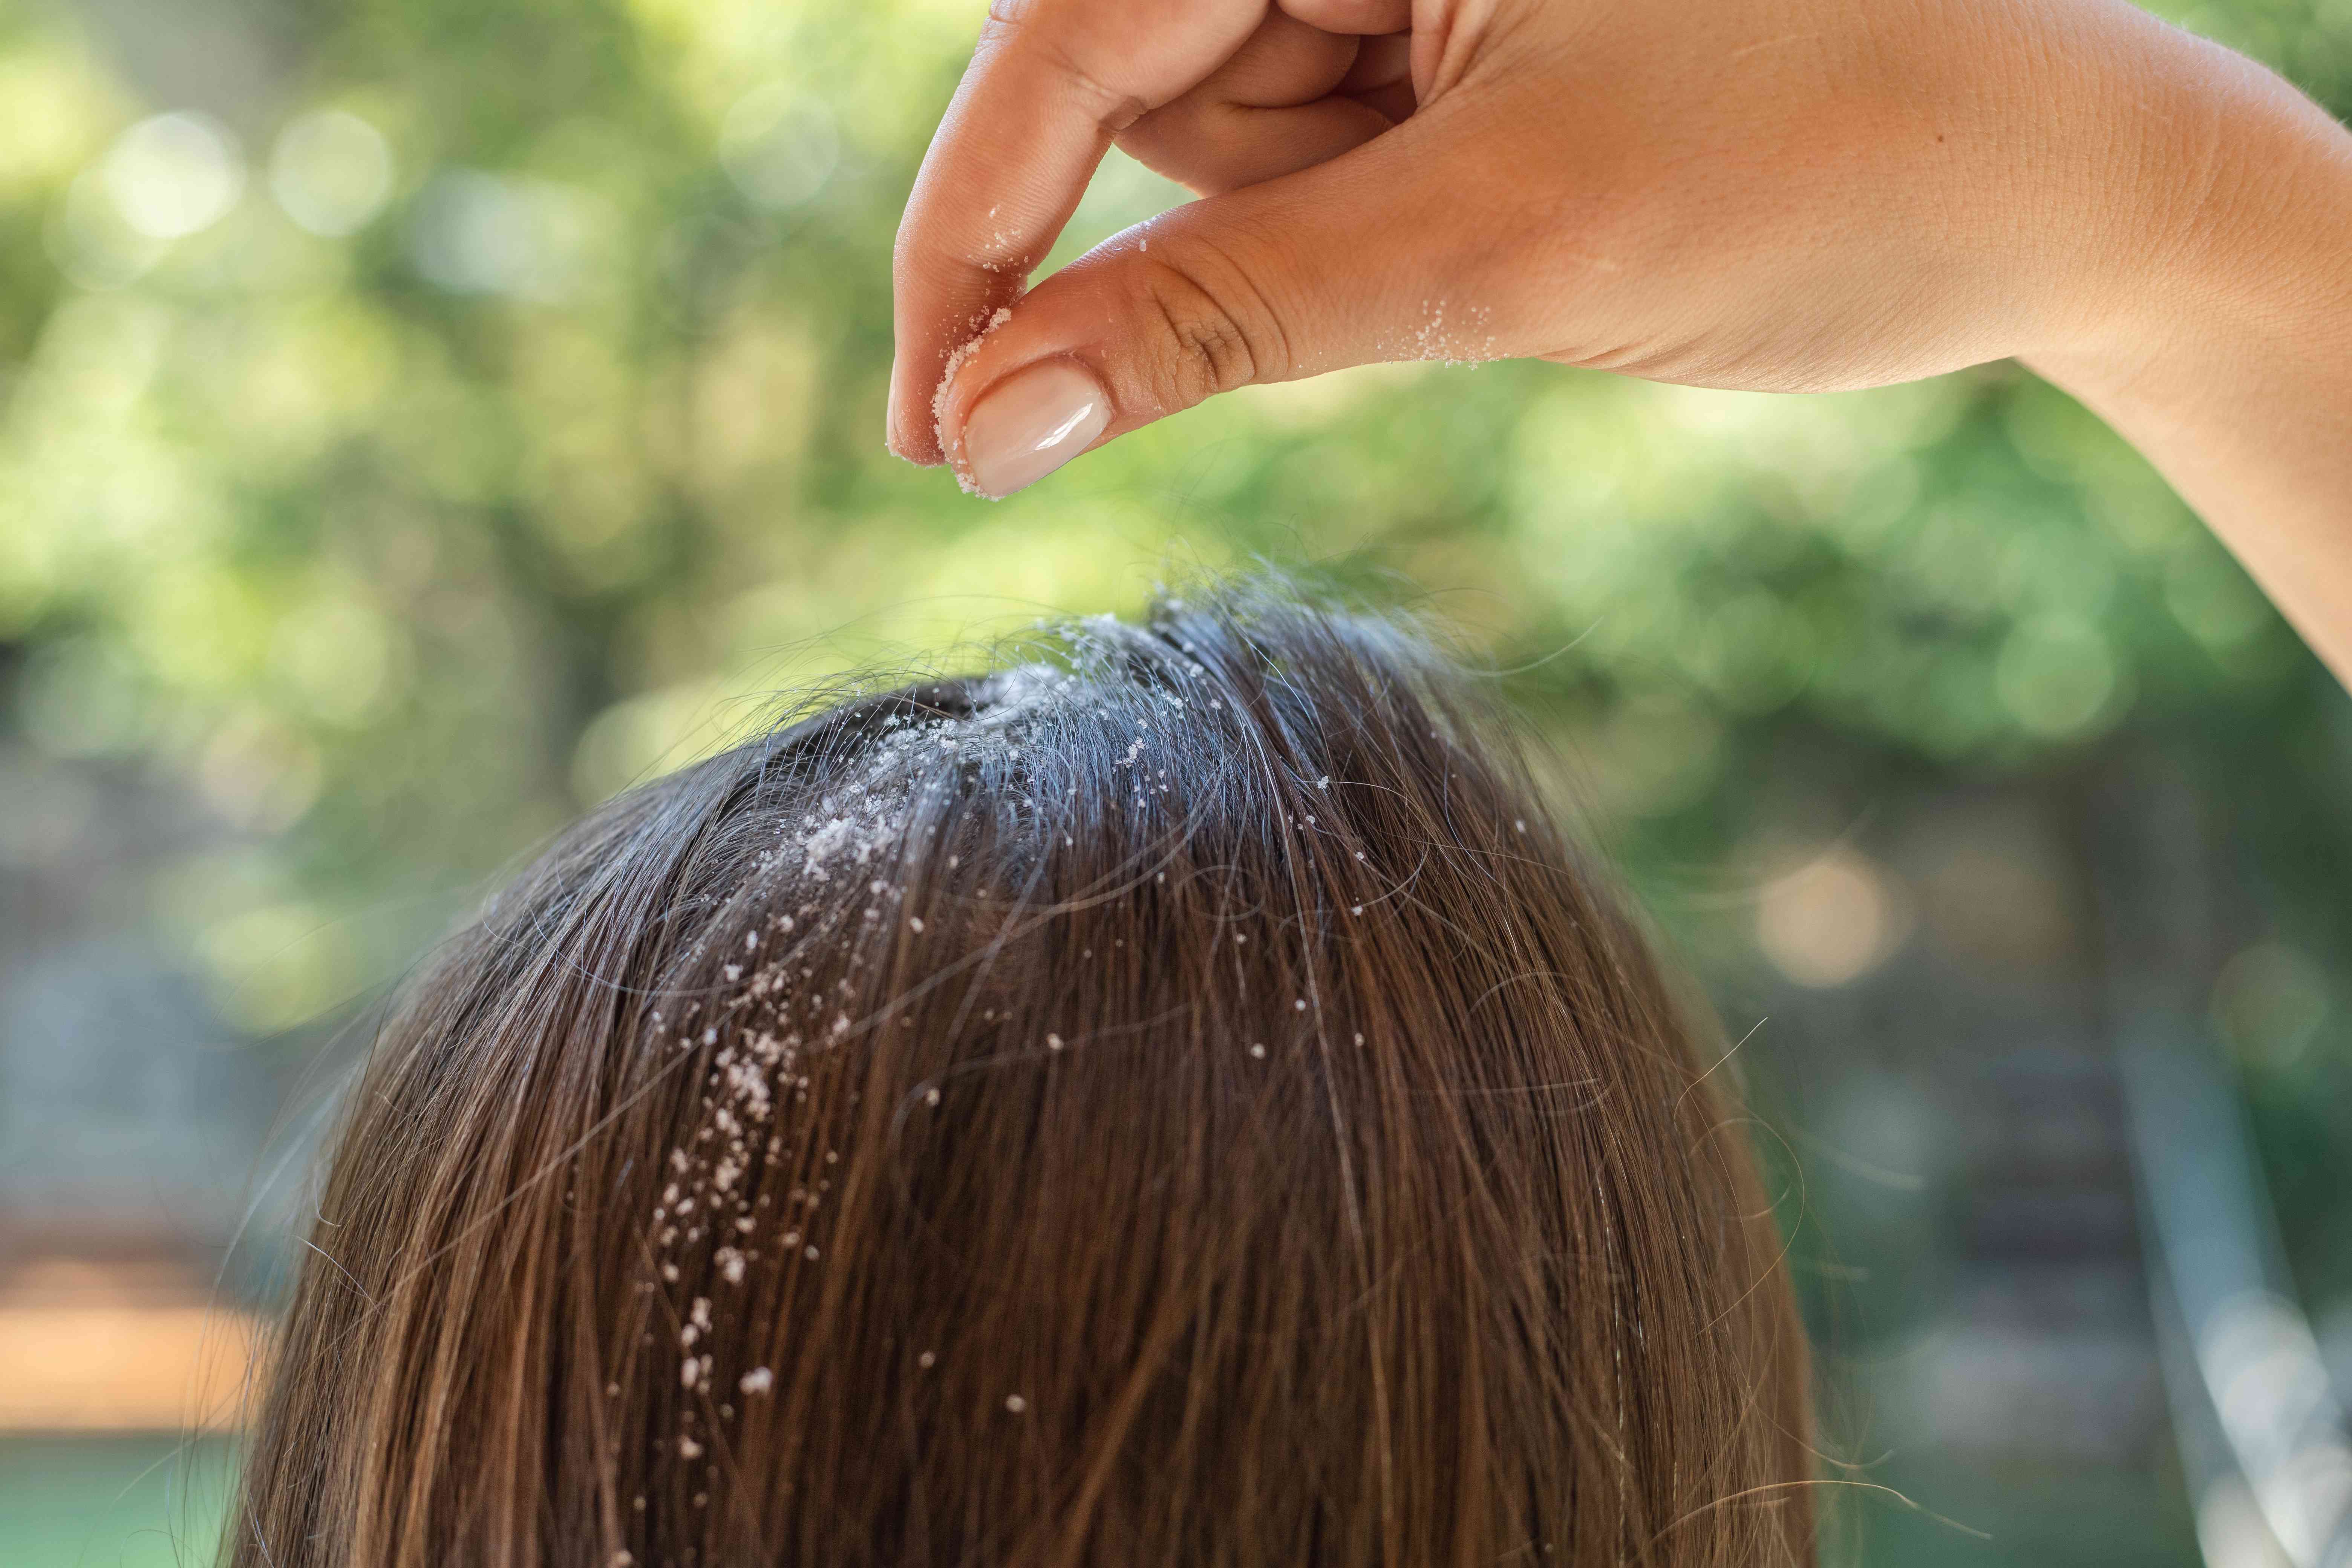 手动将玉米淀粉洒到头发中，从头皮中吸收油脂和油脂